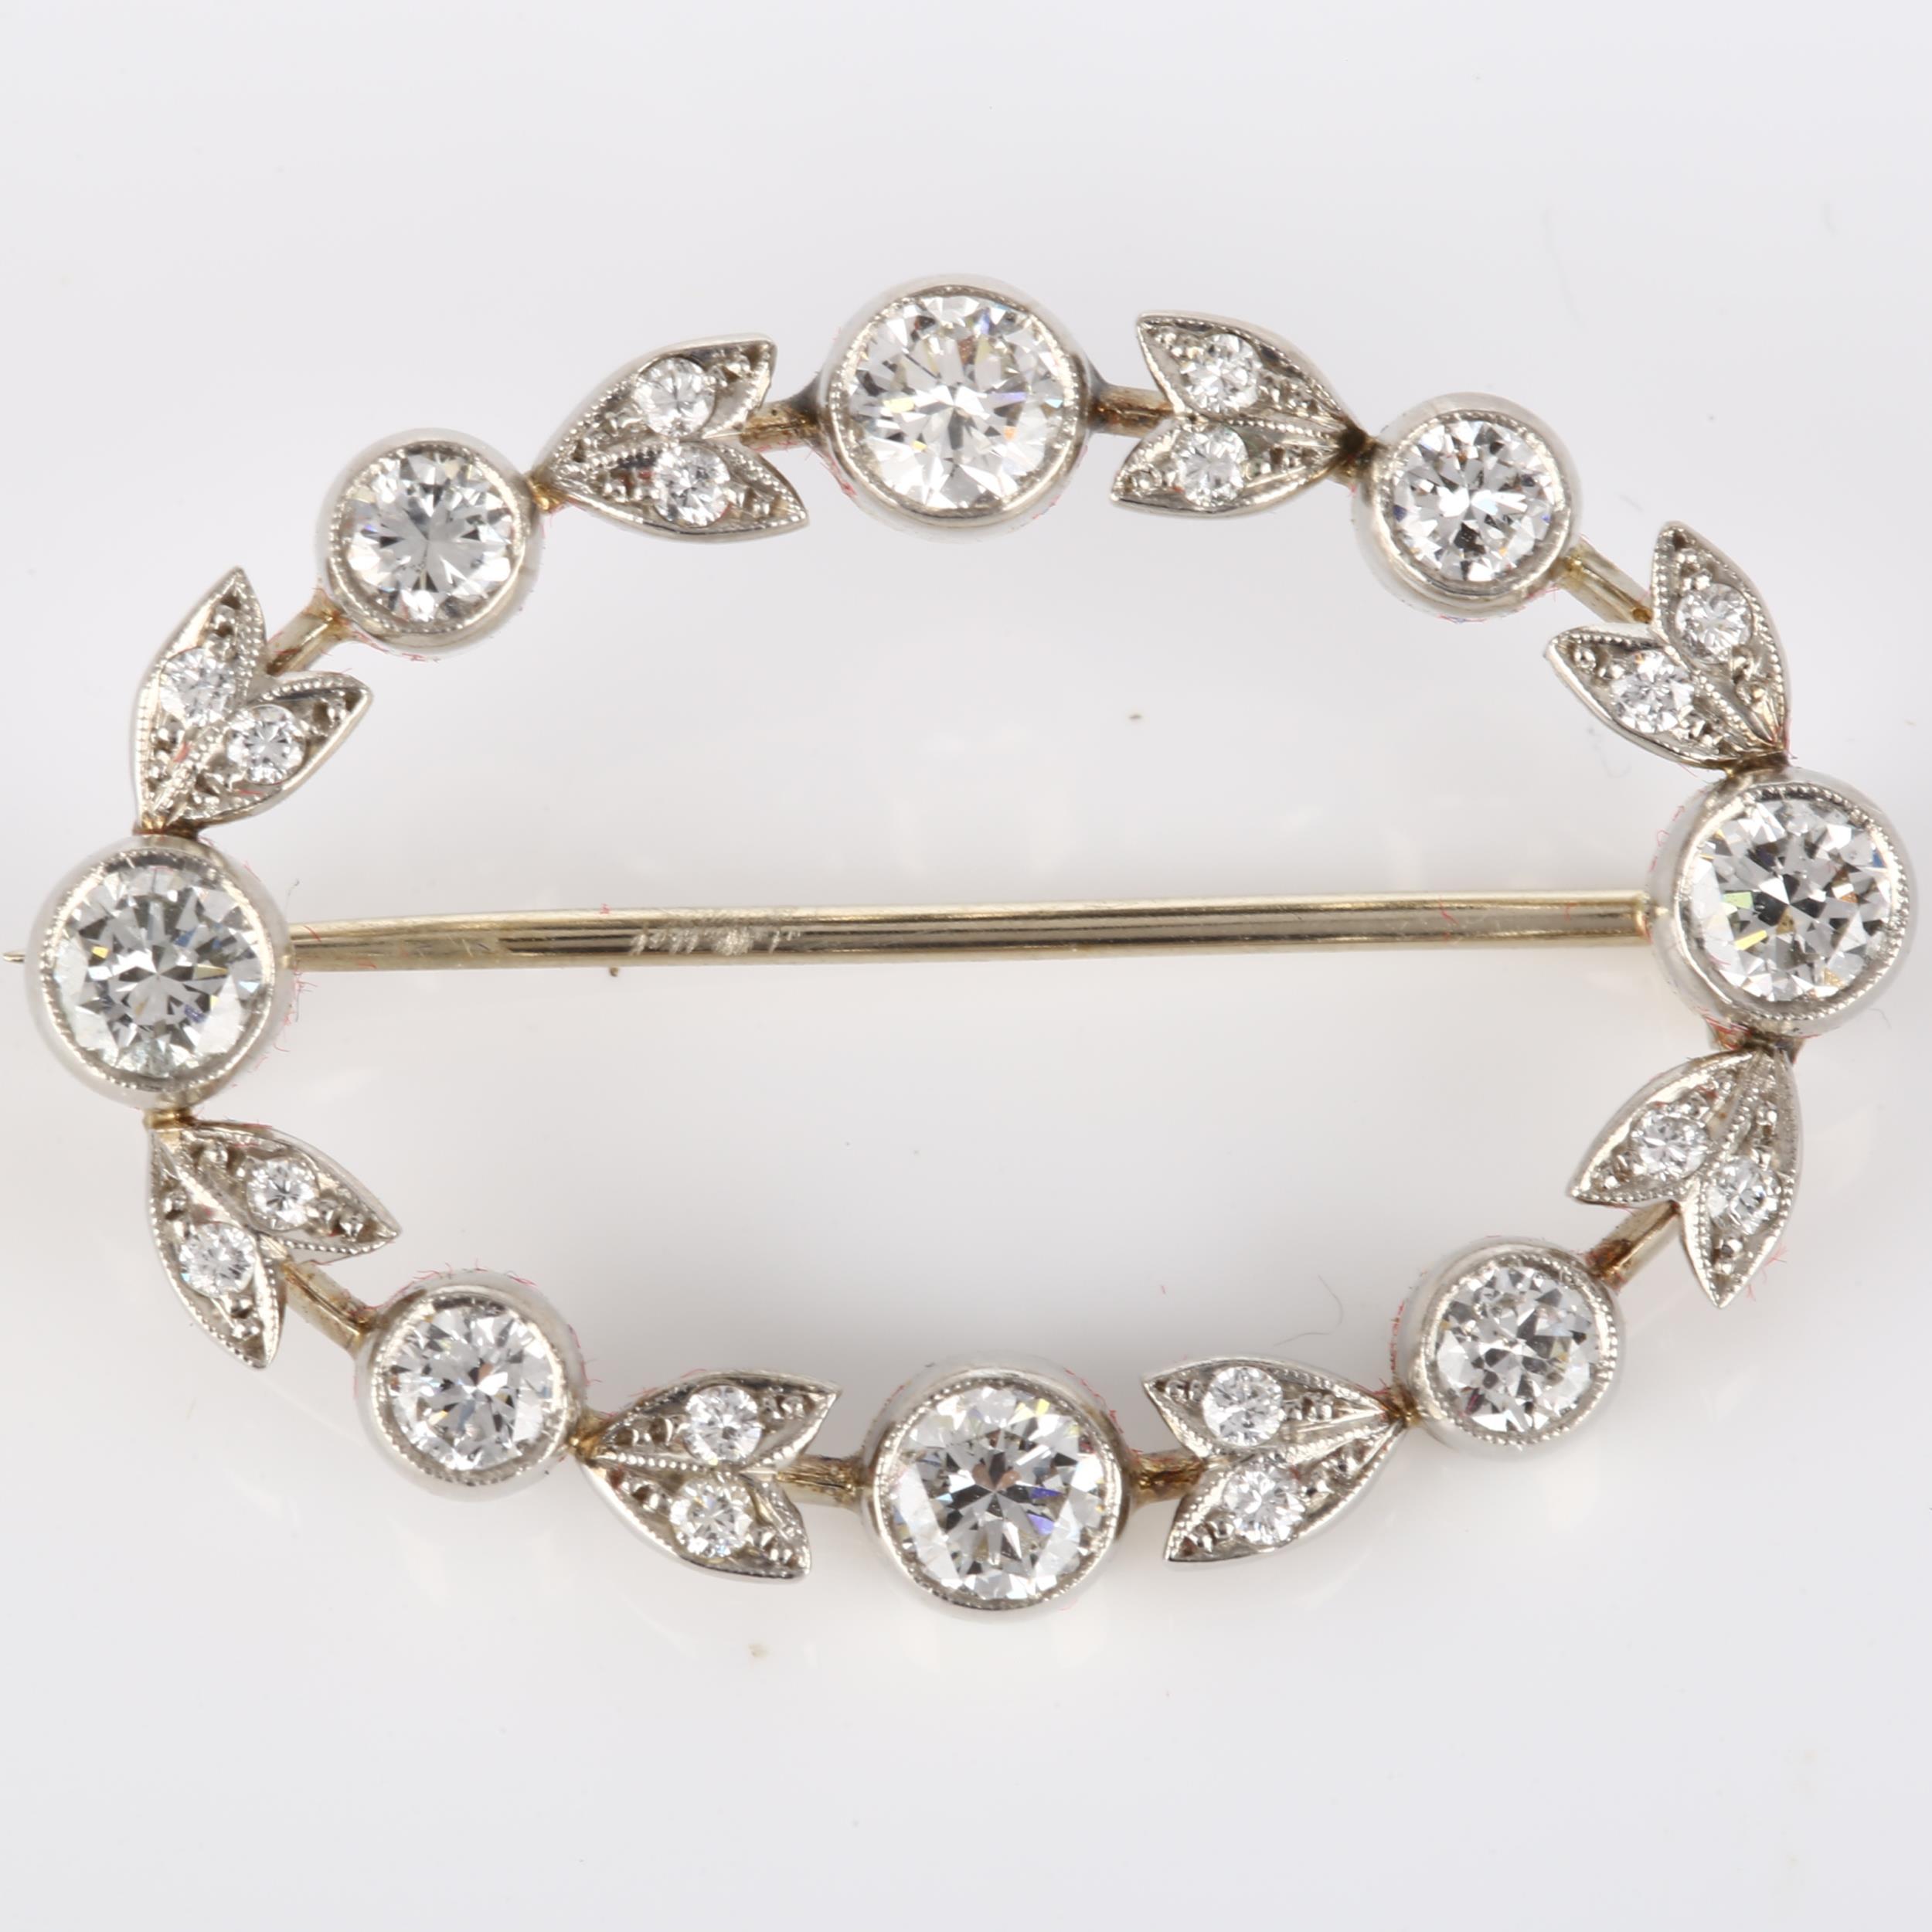 A Belle Epoque diamond brooch, openwork oval form with floral design set with modern round - Bild 3 aus 4